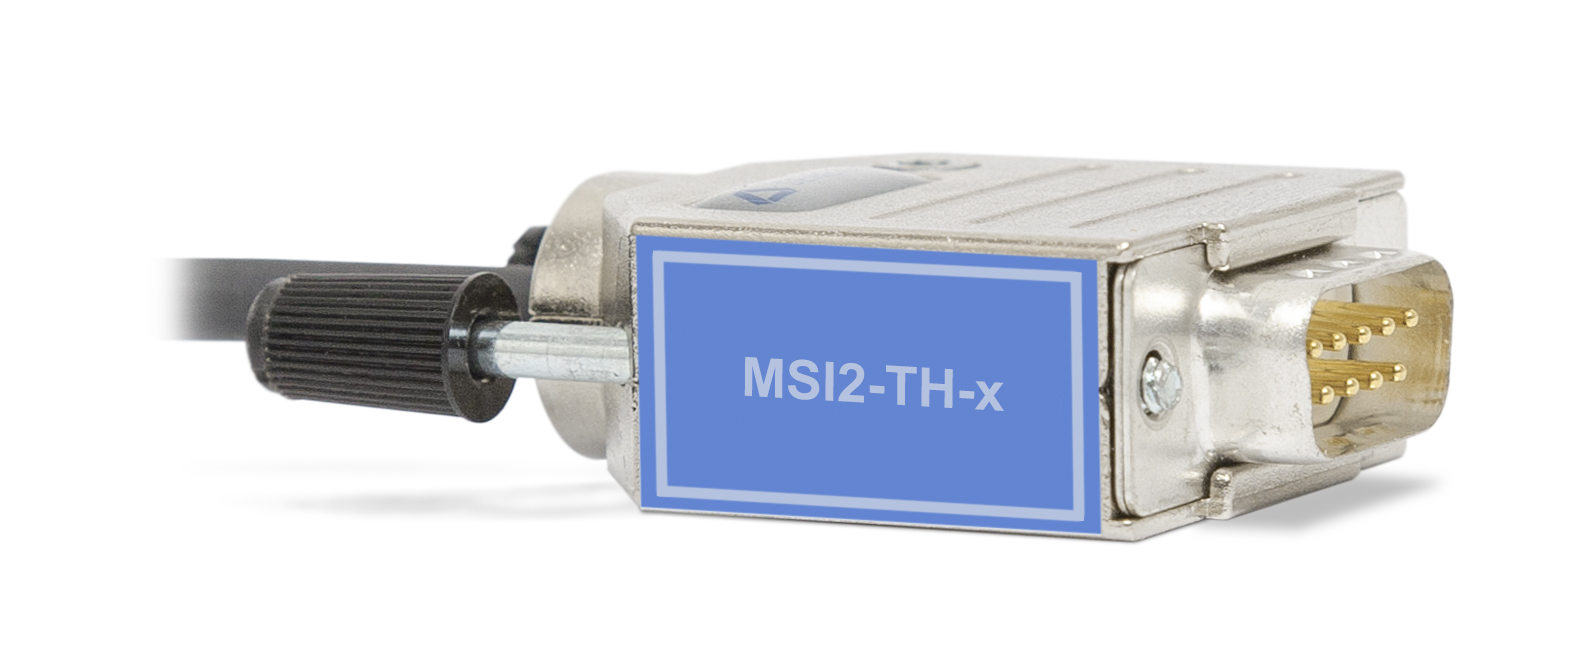 MSI2-TH-x